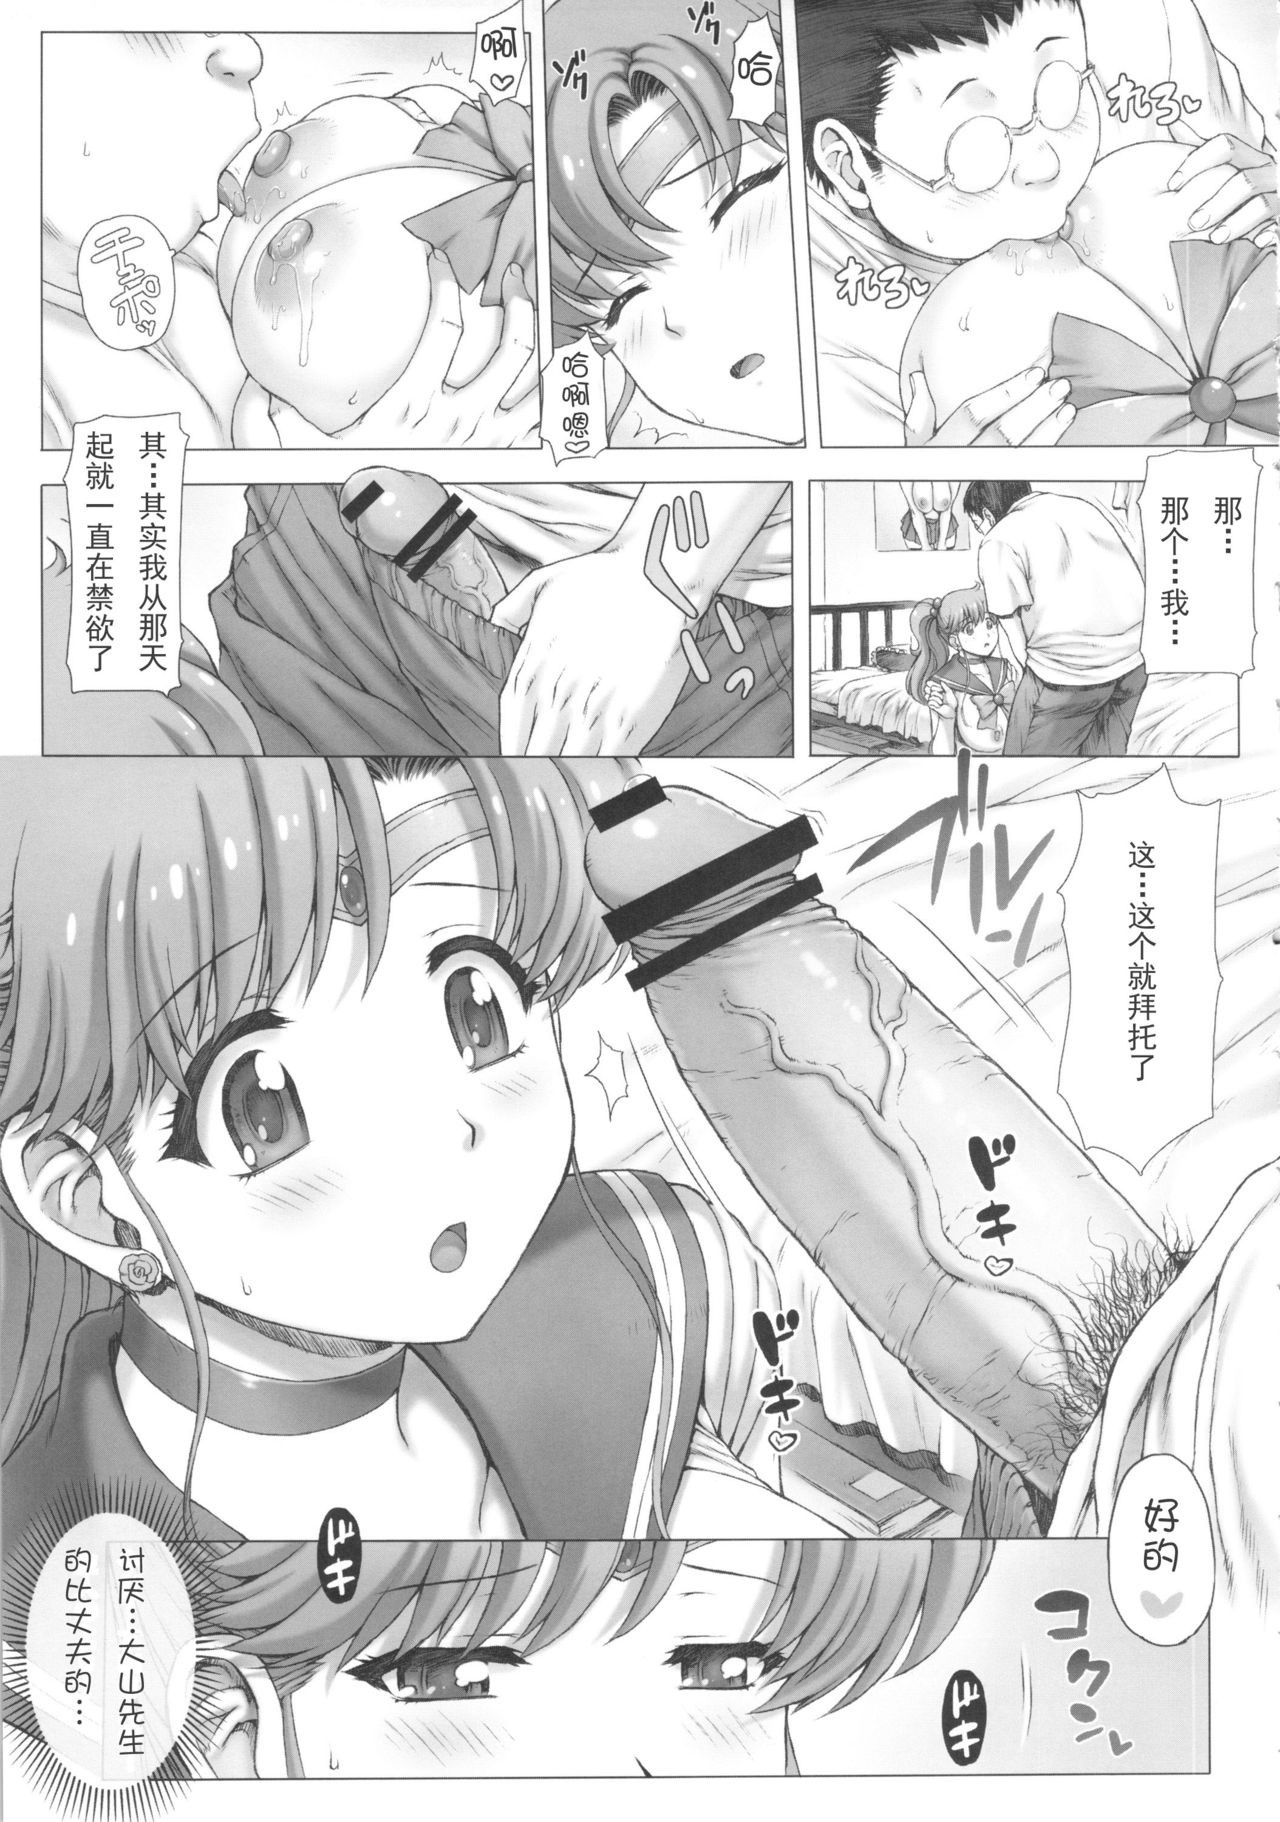 Inka + Omake Bon + Postcard hentai manga picture 8